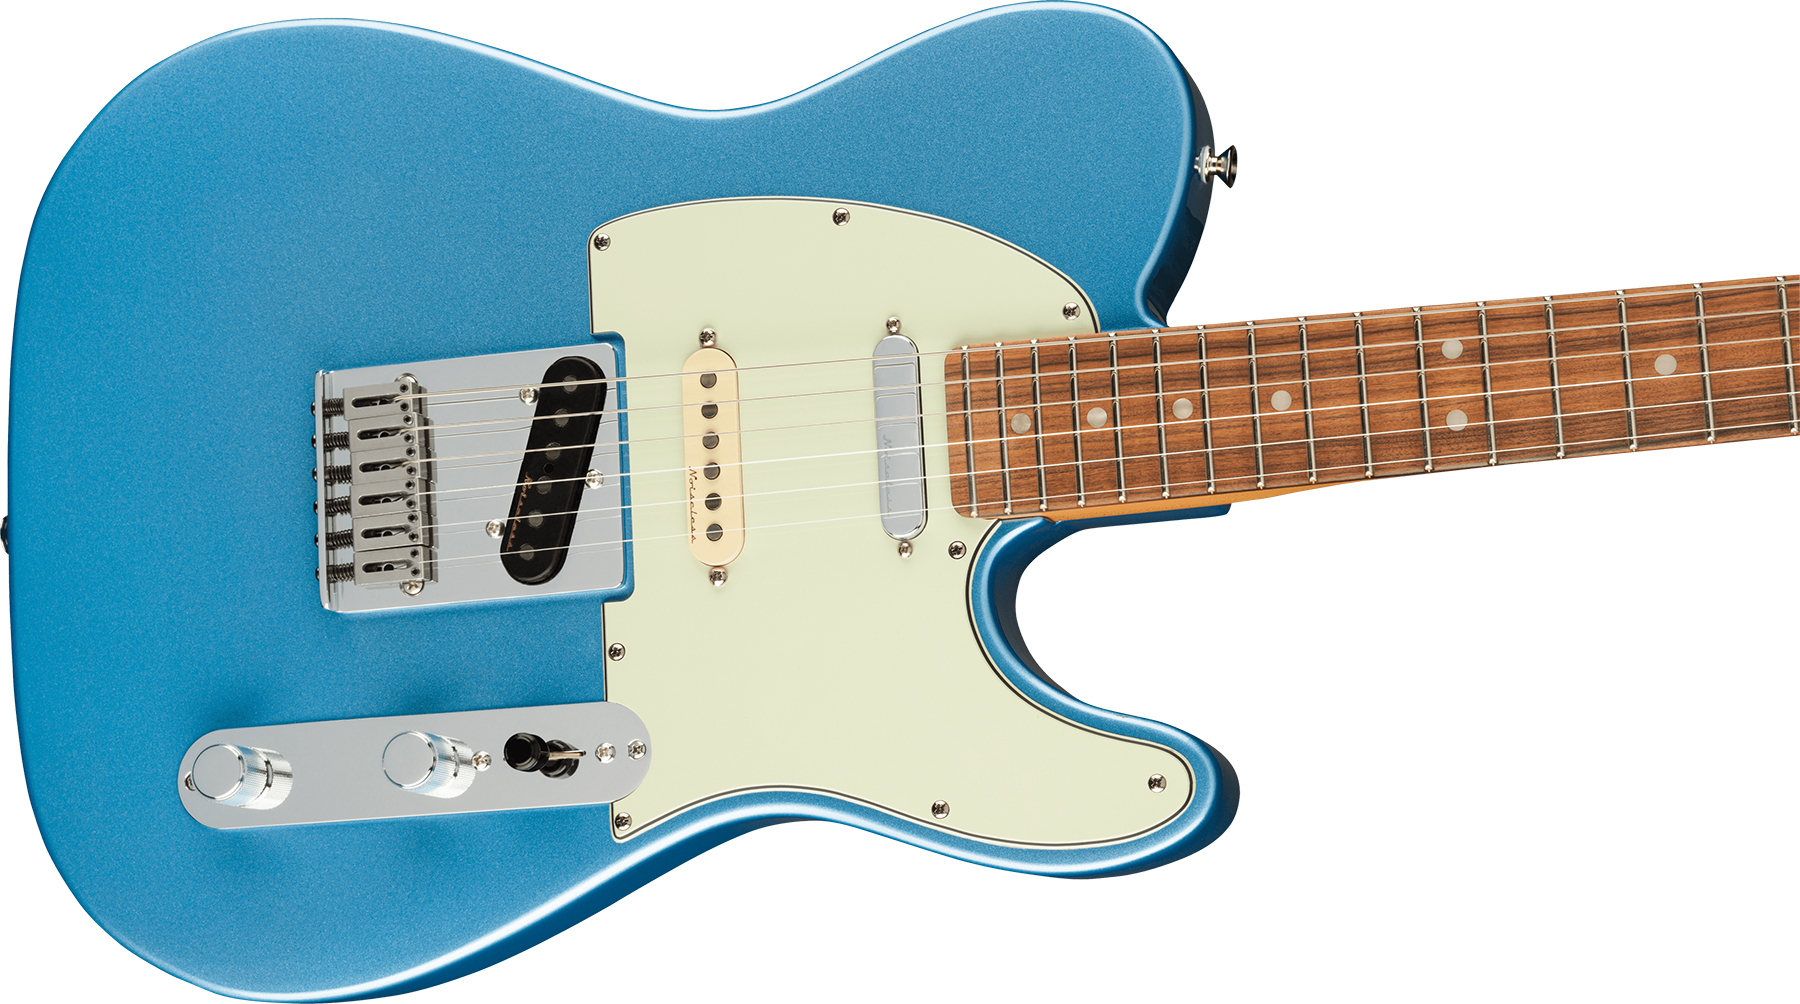 Fender Tele Player Plus Nashville Mex 3s Ht Pf - Opal Spark - Guitarra eléctrica con forma de tel - Variation 2